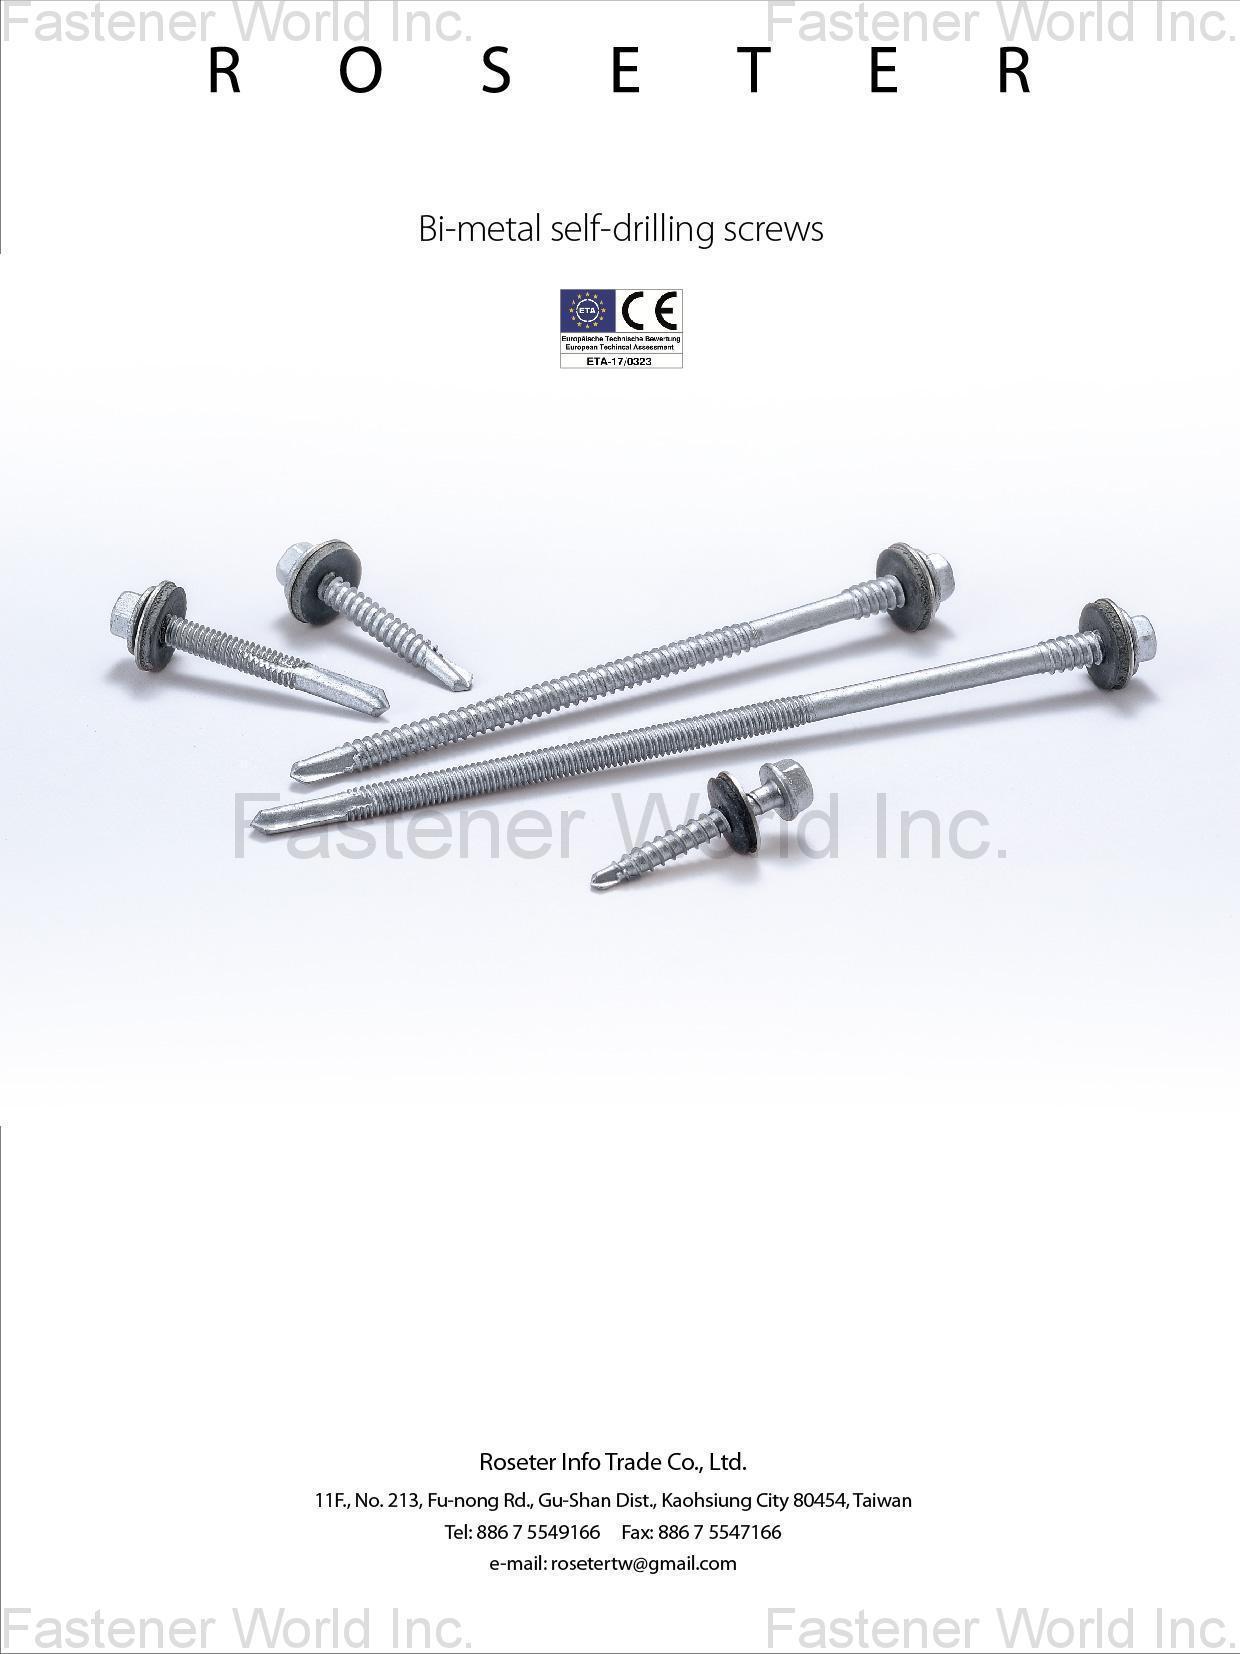 ROSETER INFO TRADE CO., LTD.  , Bi-metal Self-drilling Screws , Bi-metal Self-drilling Screws